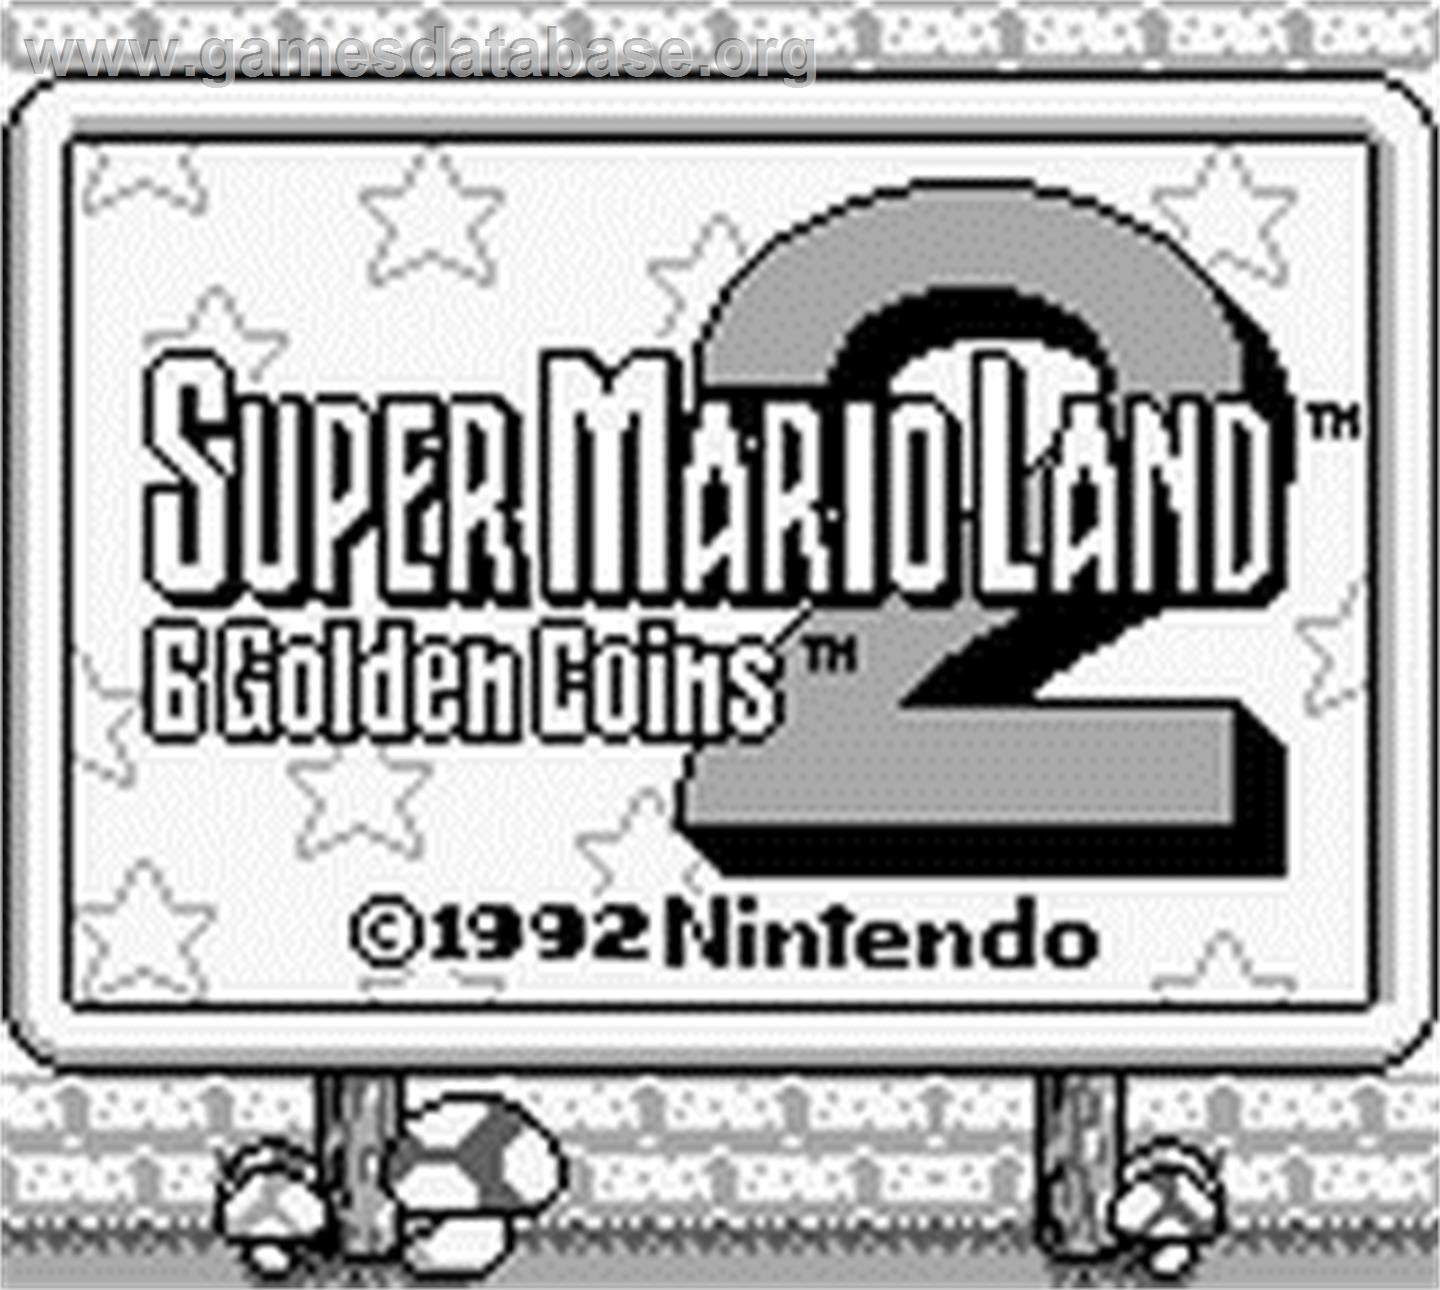 Super Mario Land 2: 6 Golden Coins - Nintendo Game Boy - Artwork - Title Screen